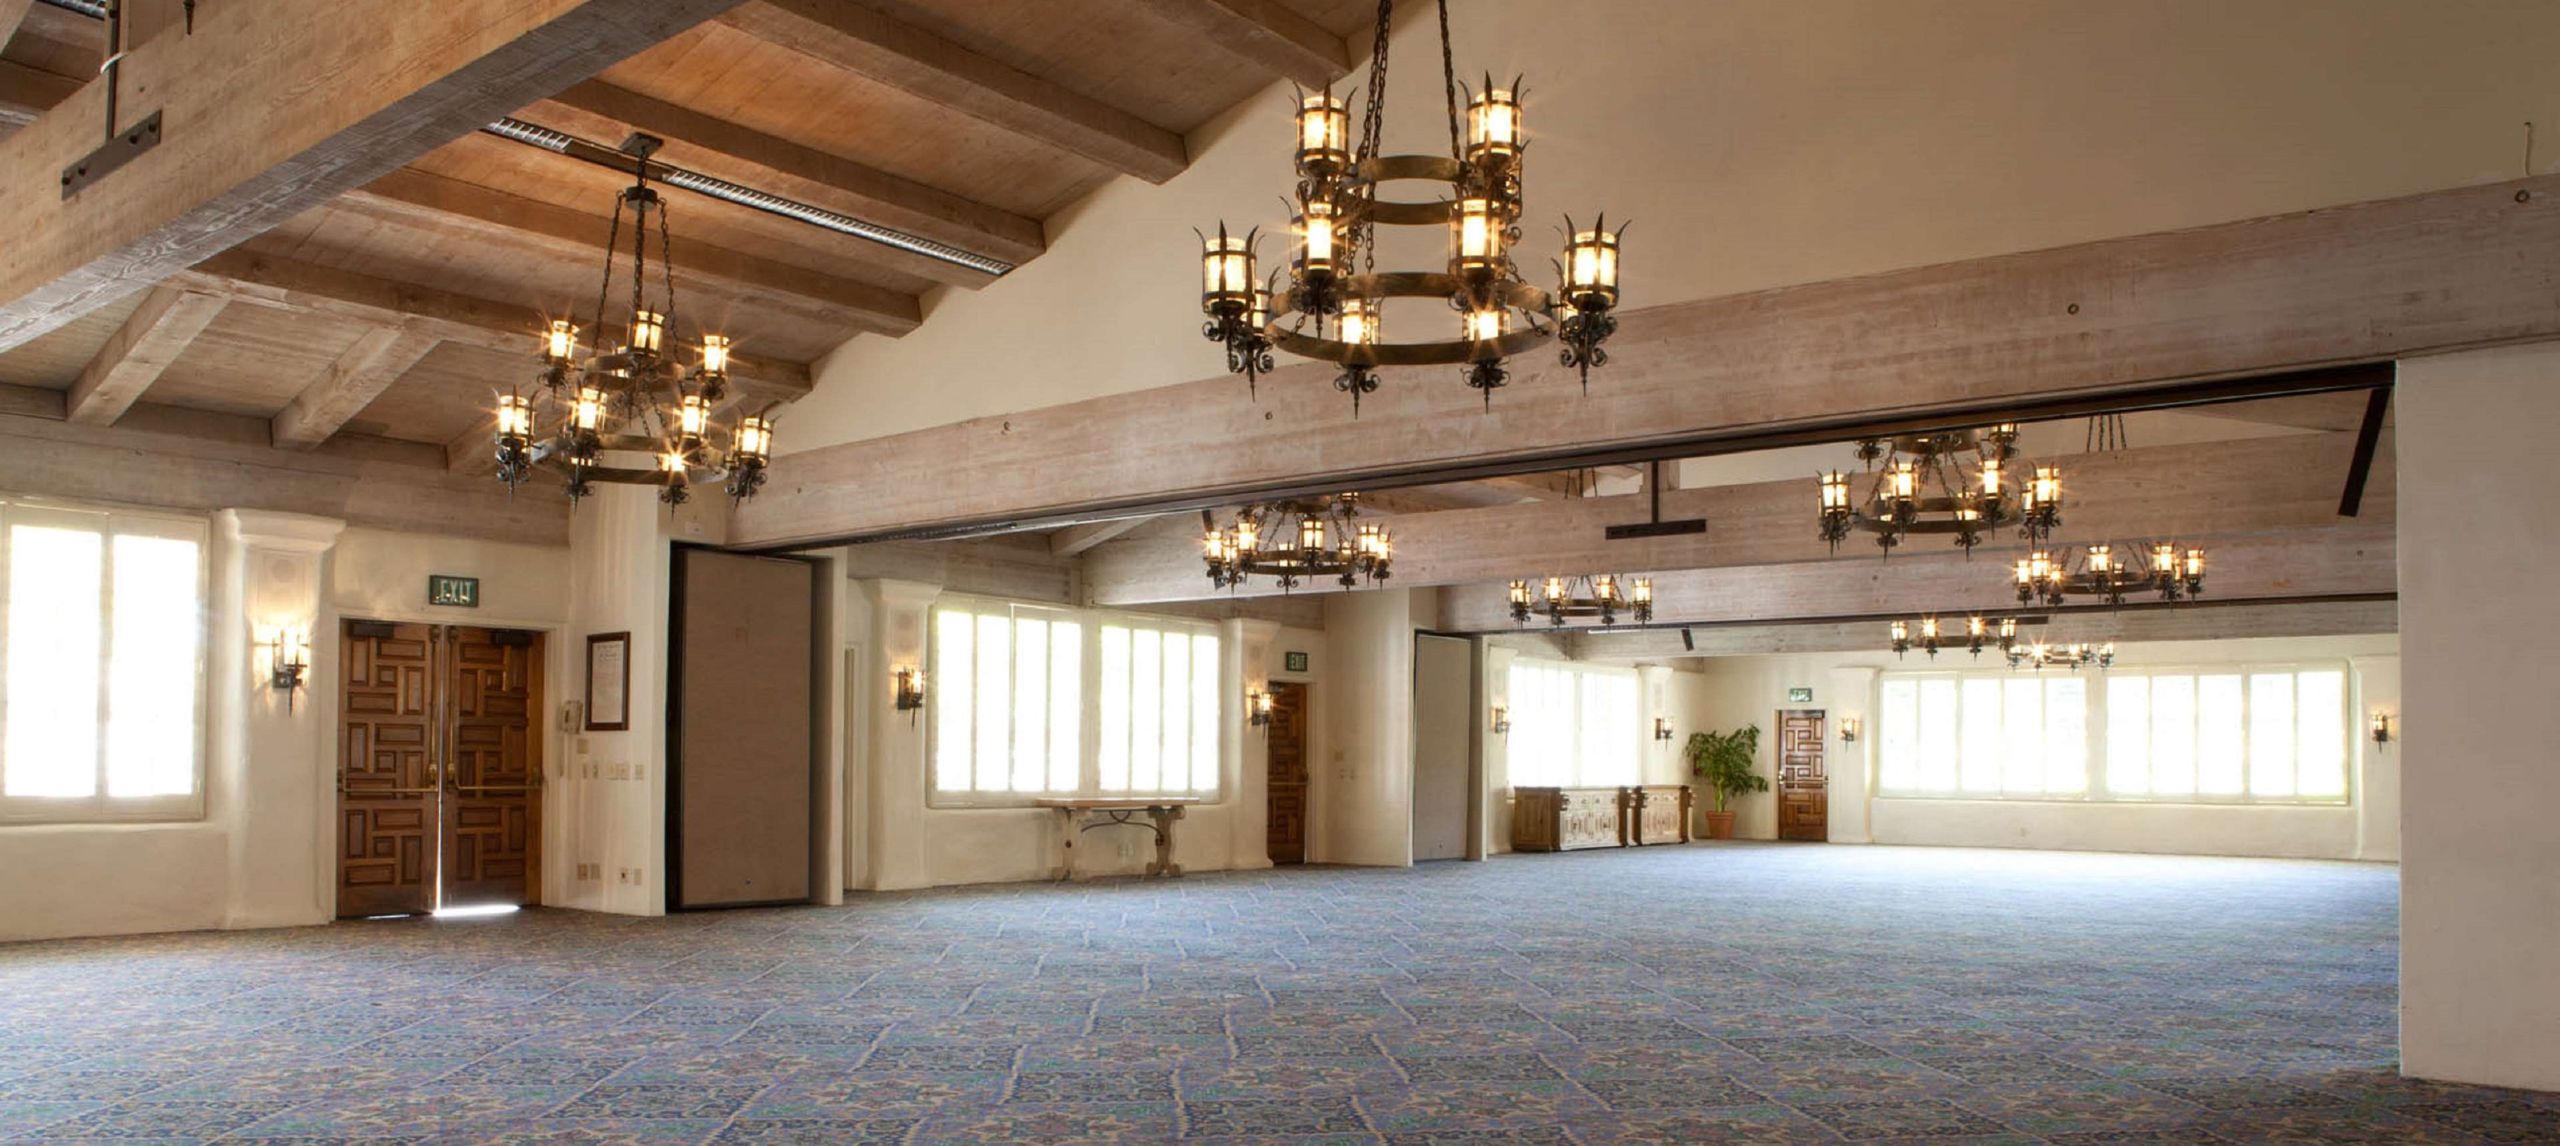 Amplia sala de reuniones con chandeliers y vigas de madera